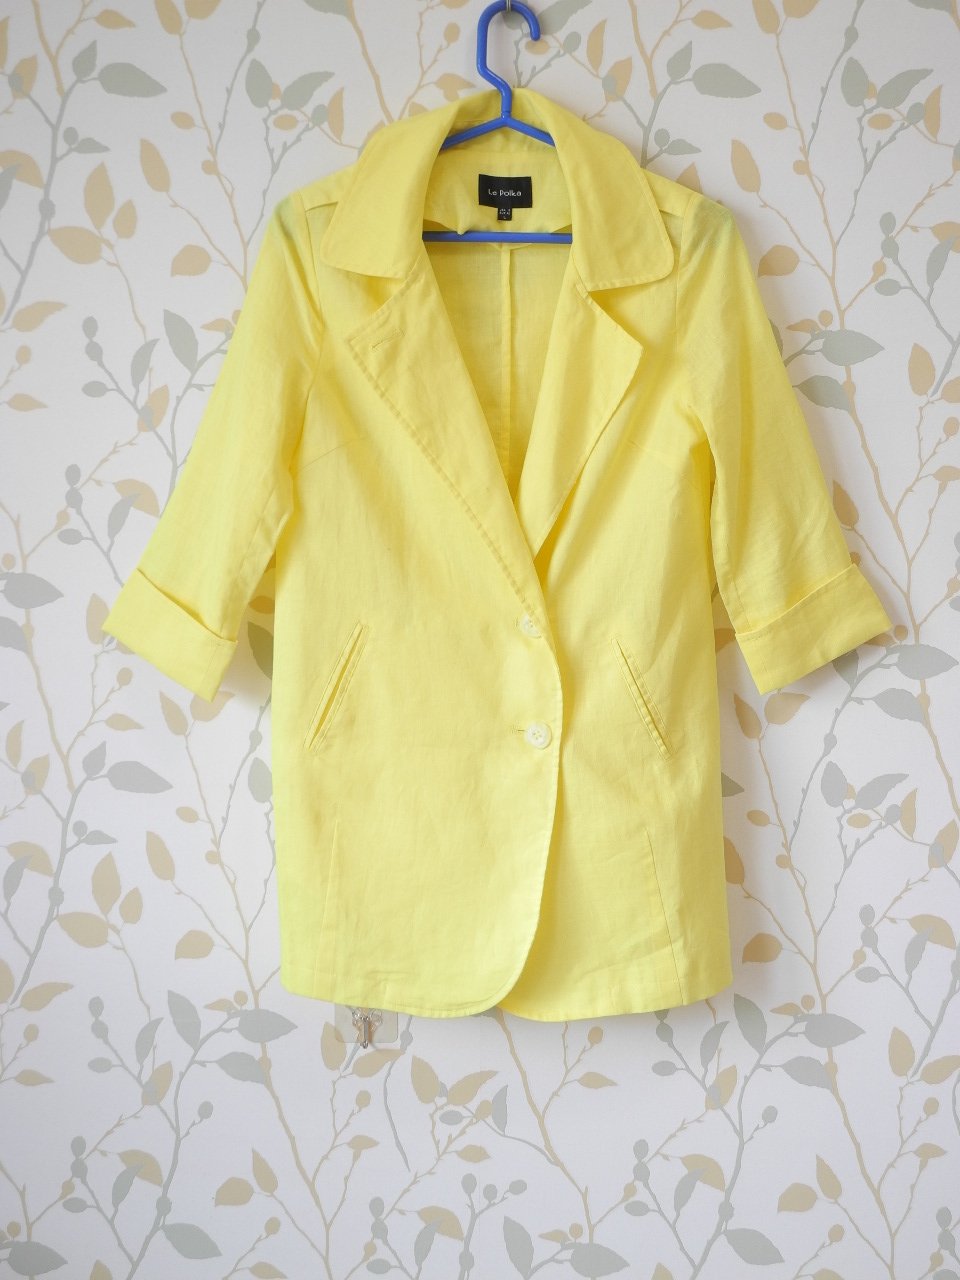 ＊pipi shop＊全新Le Polka 專櫃陽光活力涼爽透氣鮮黃色苧麻單排釦七分袖風衣外套, 特價